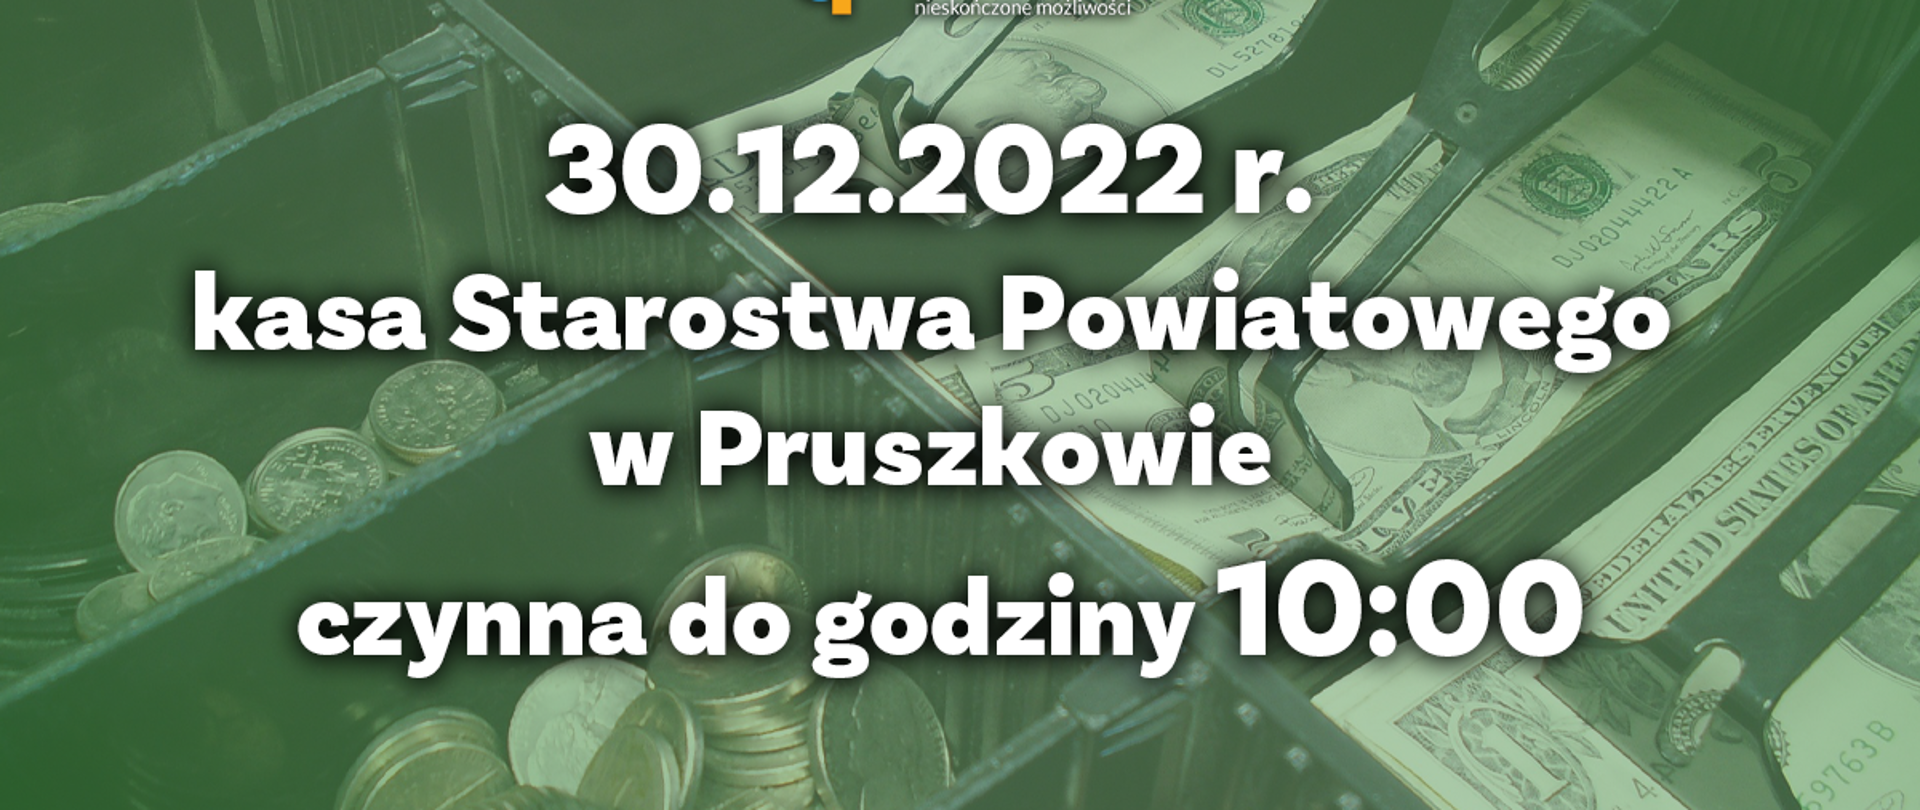 zielone grafika, w tle kształty monet i banknotów. napis: 30.12. 2022 roku kasa w Starostwie Powiatowym czynna do godziny 10:00 